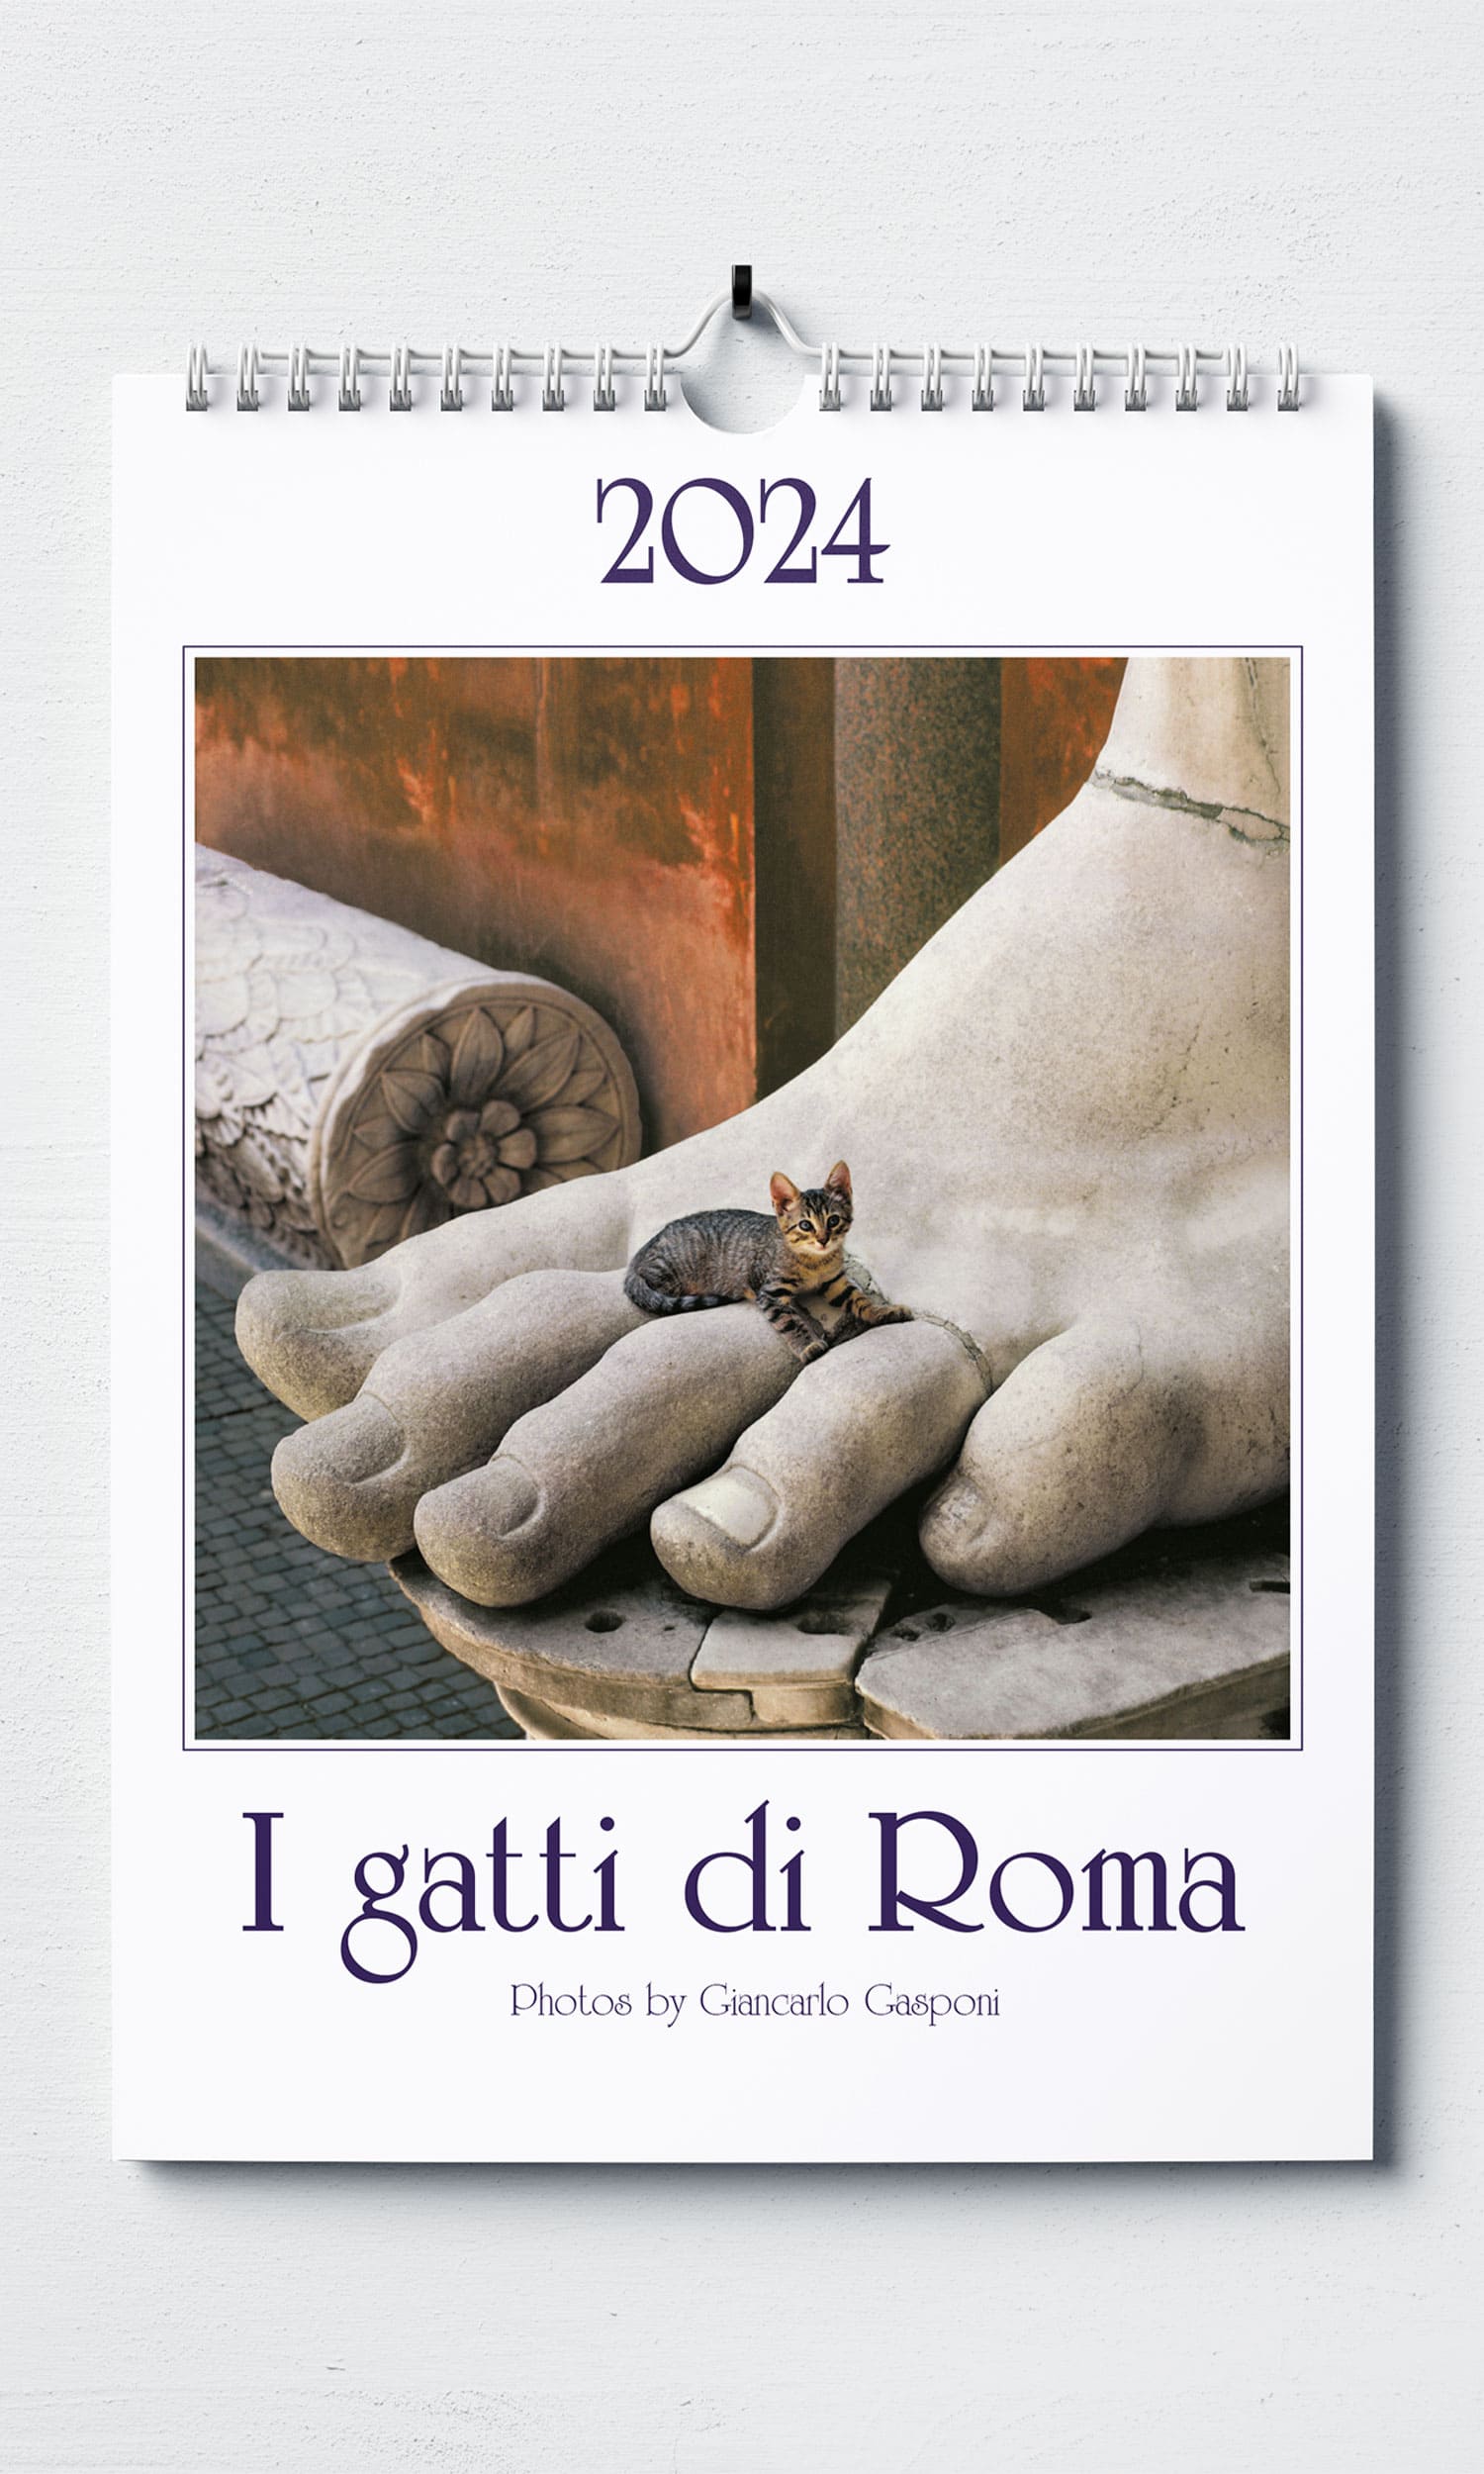 Calendario medio Gasponi - Gatti di Roma ISBN 9791280949455 - Gruppo Lozzi  Editori